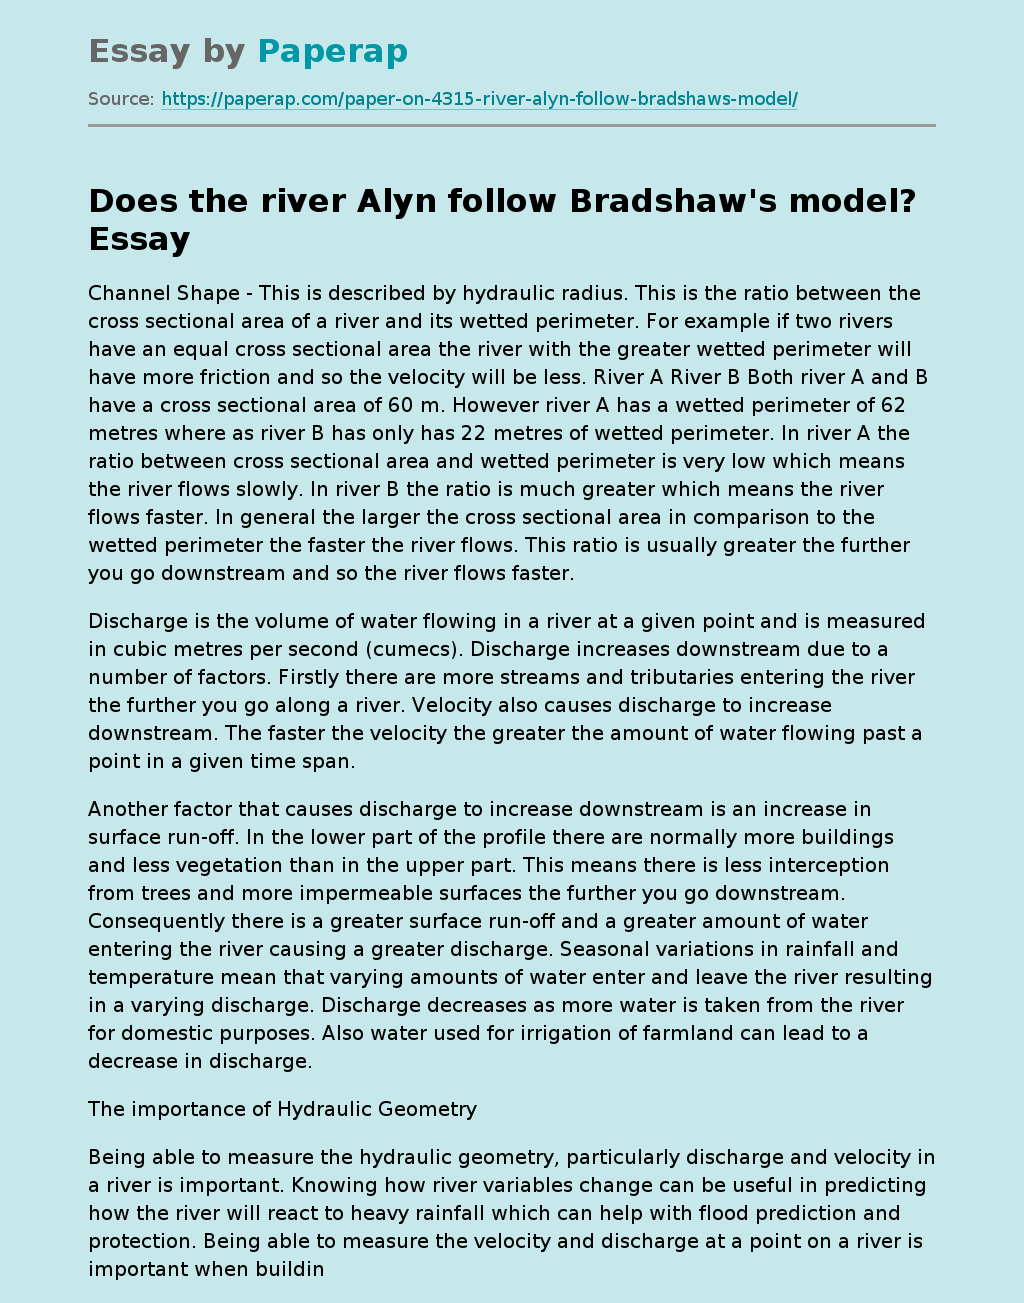 Does the river Alyn follow Bradshaw's model?